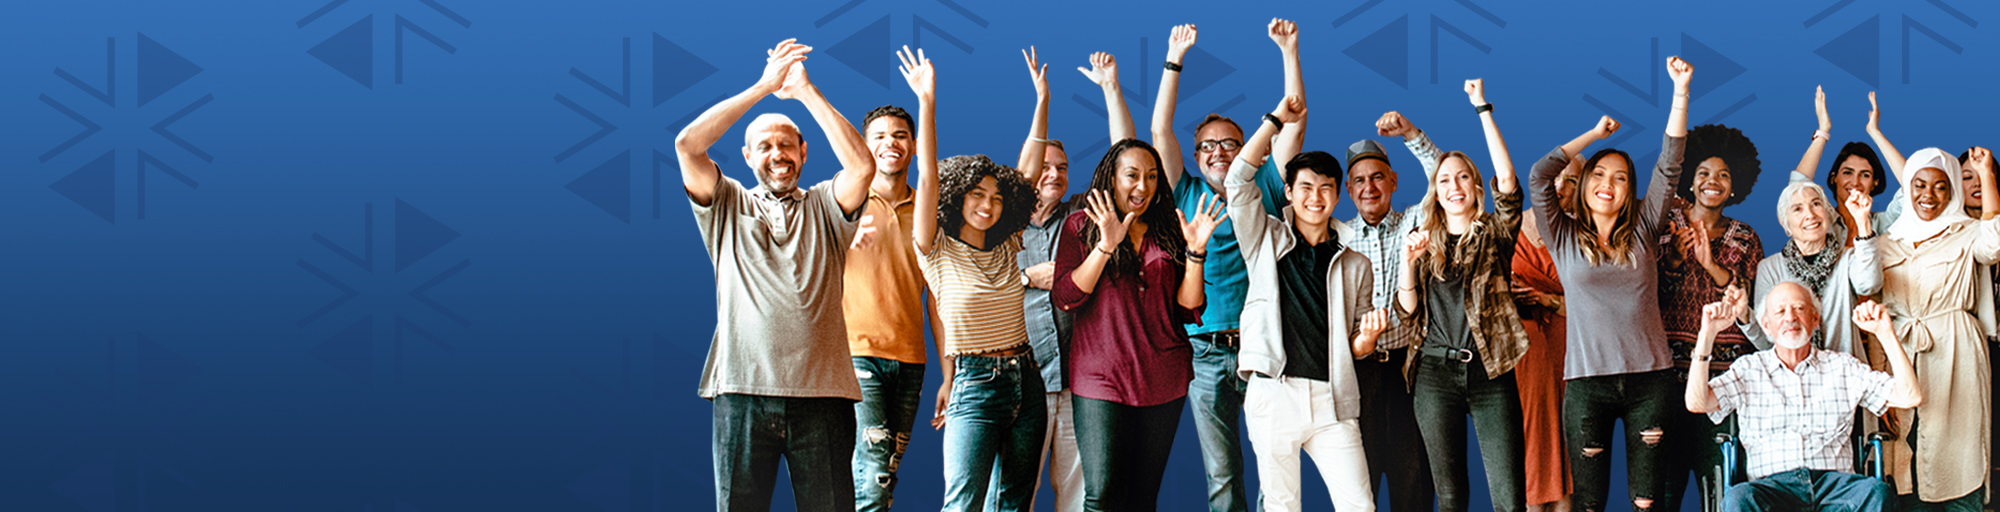 Un grupo diverso de personas frente a un fondo azul, con los brazos levantados en celebración.